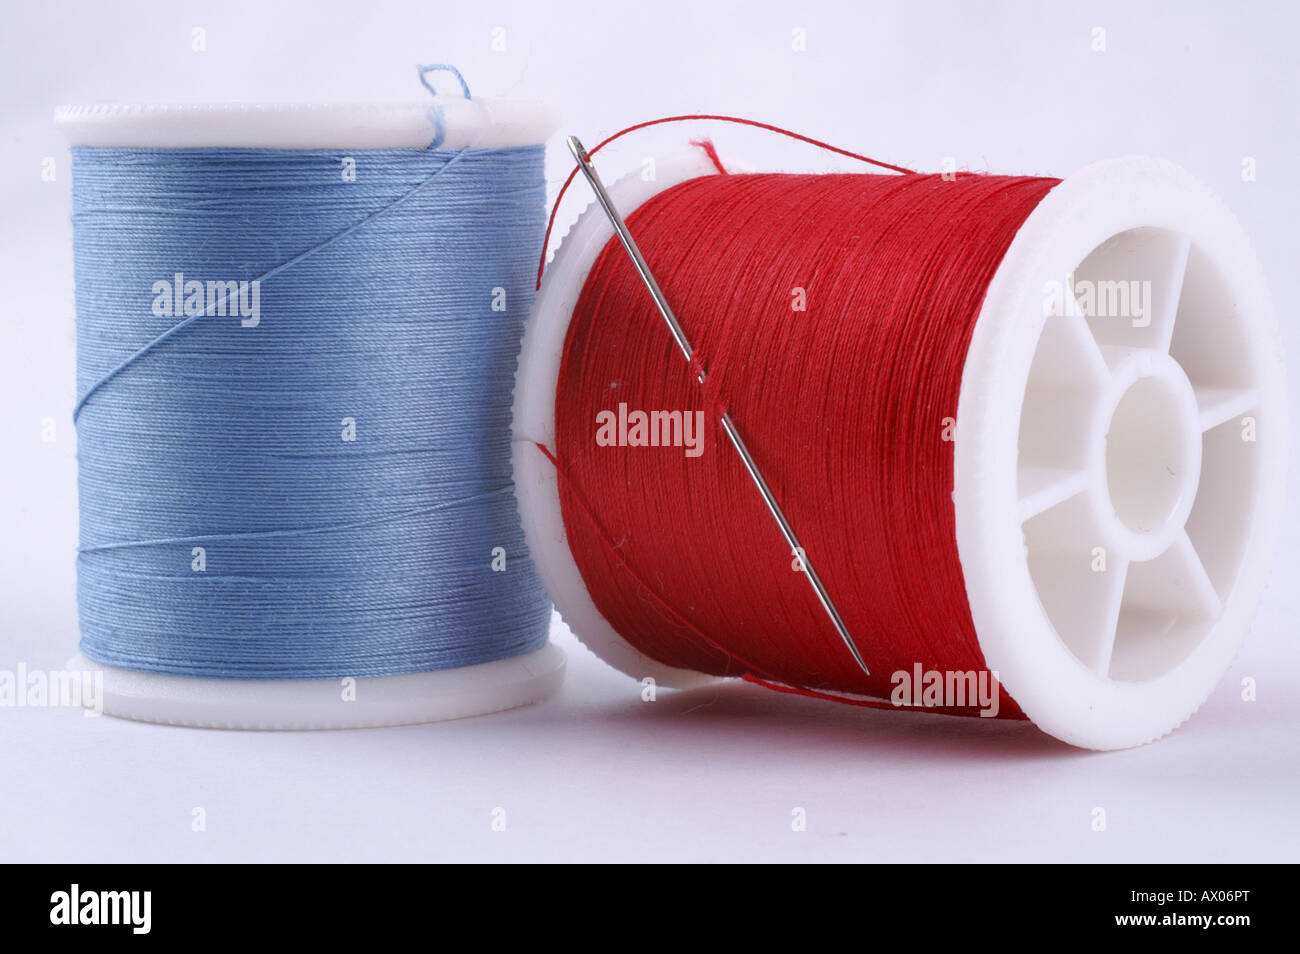 Cotton crafts cotton reels in red an blue with needle / Nähgarn Garn Stopfgarn in blau und rot mit Nadel Stock Photo